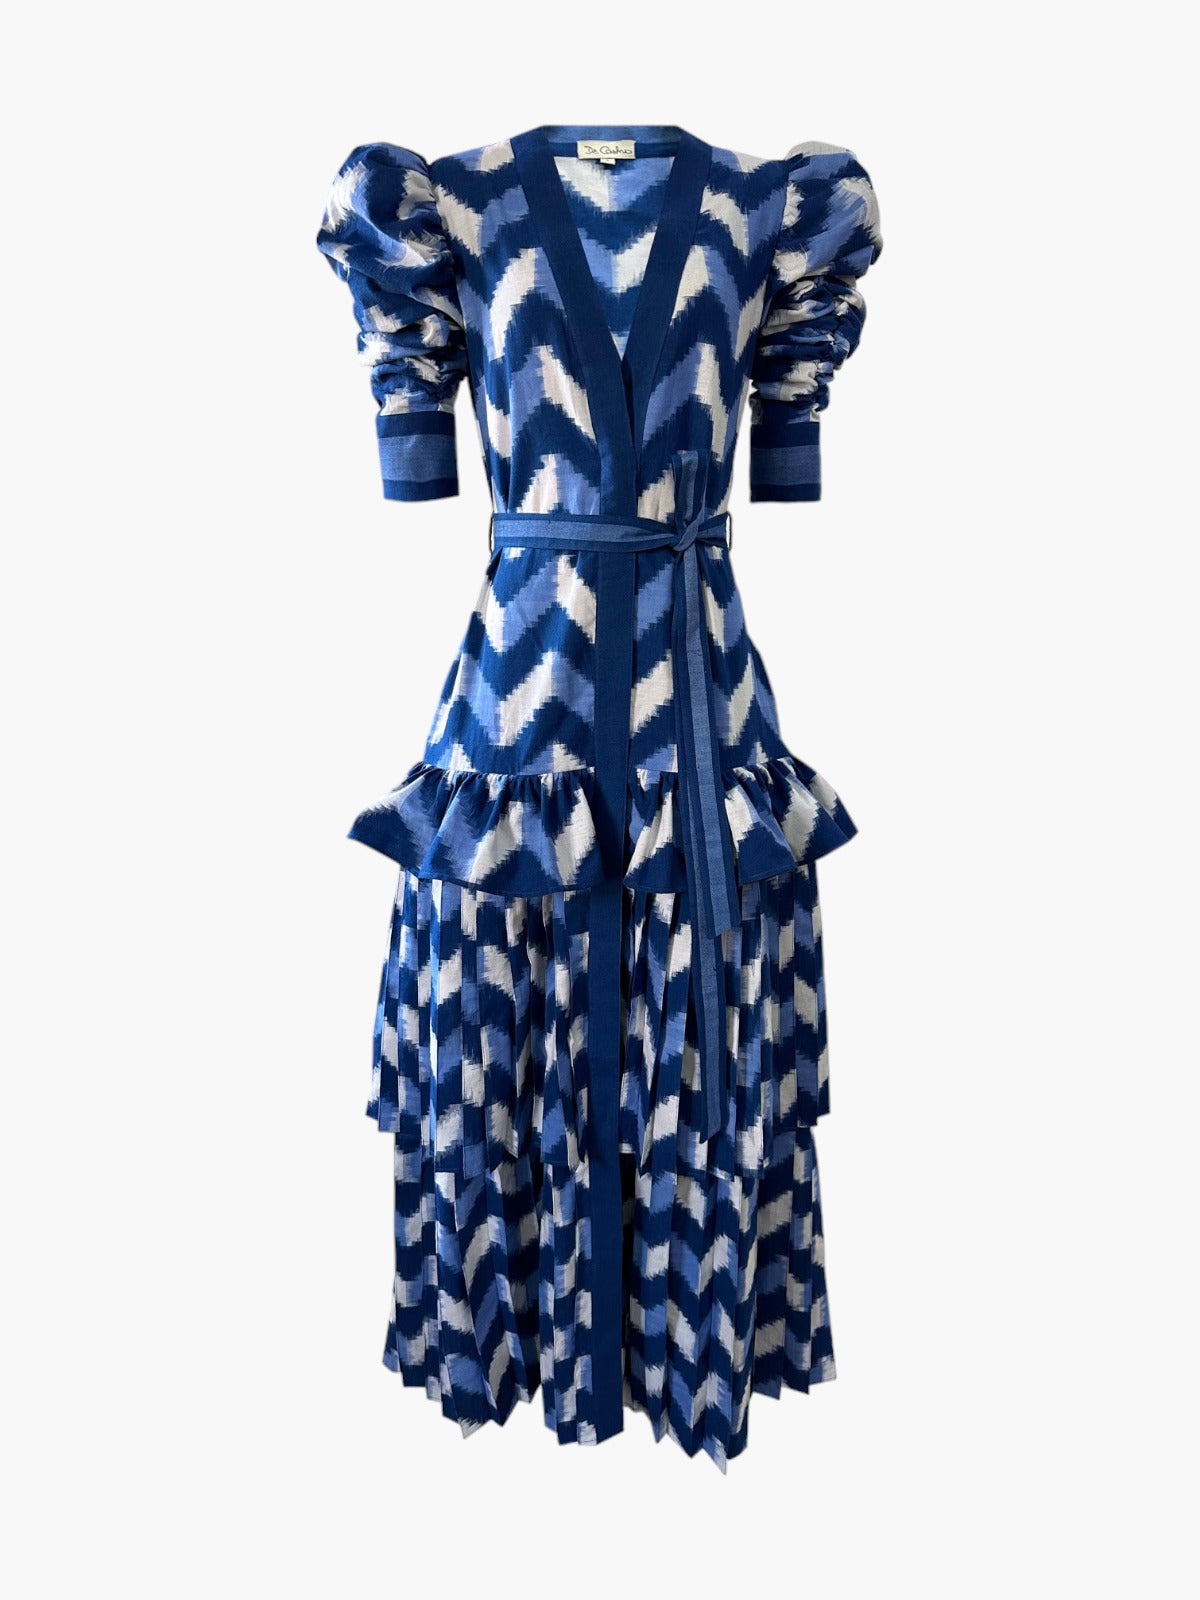 Lapis Lazuli Dress | Waves Lapis Lazuli Dress | Waves